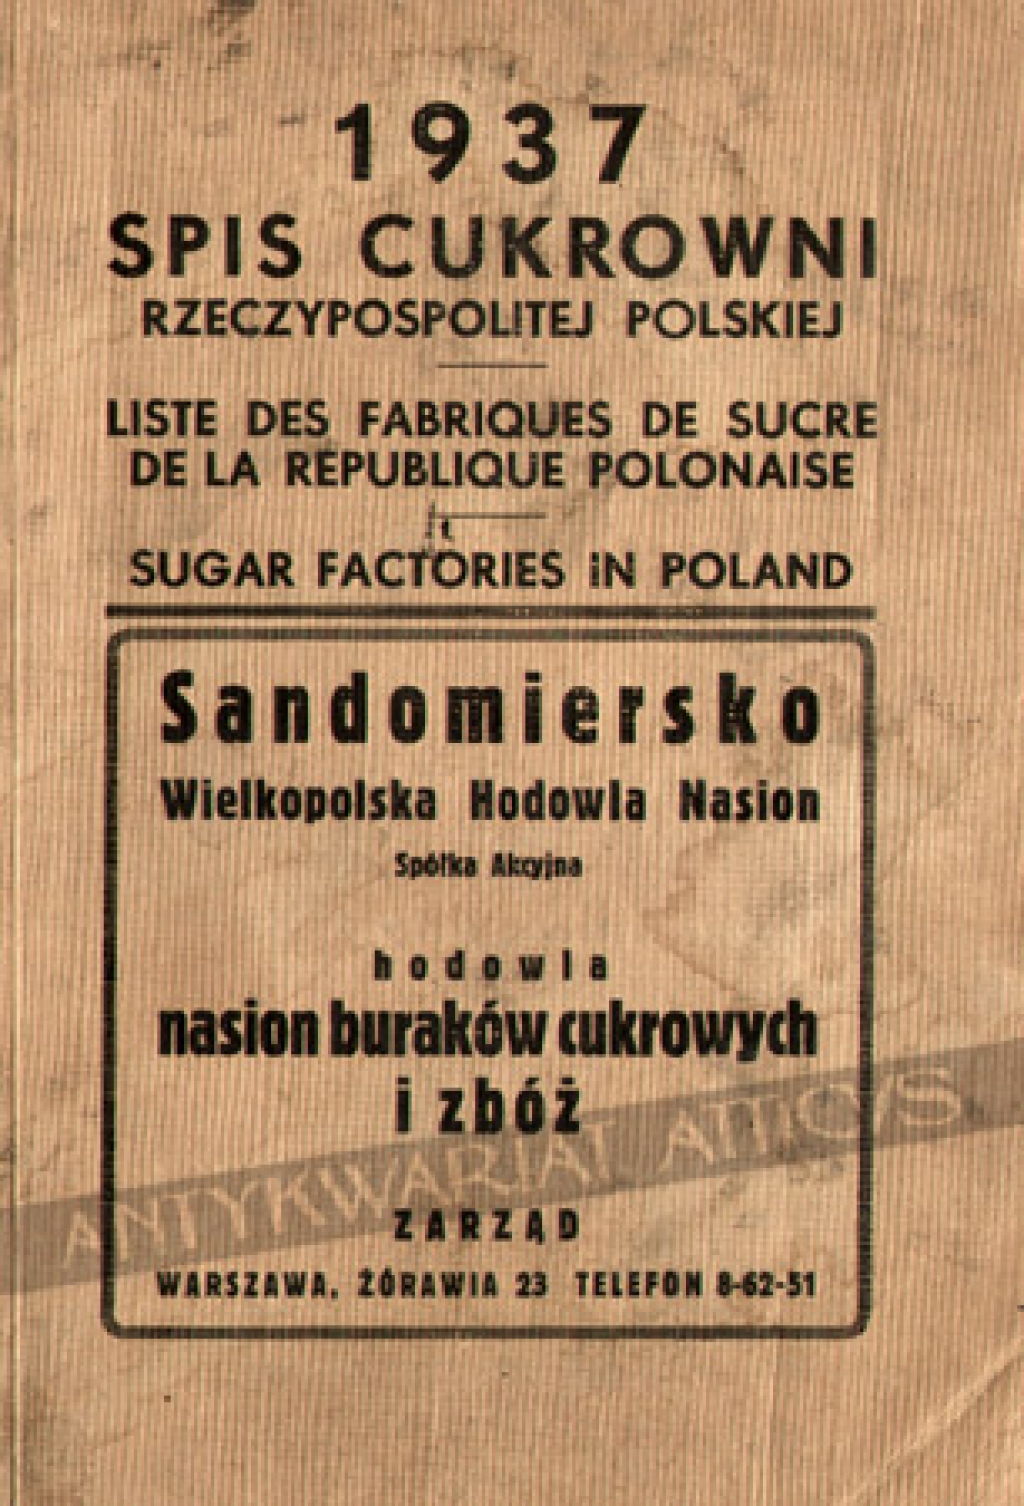 Spis cukrowni Rzeczypospolitej PolskiejListe des fabriques de sucre de la Republique PolonaiseSugar factories in Poland